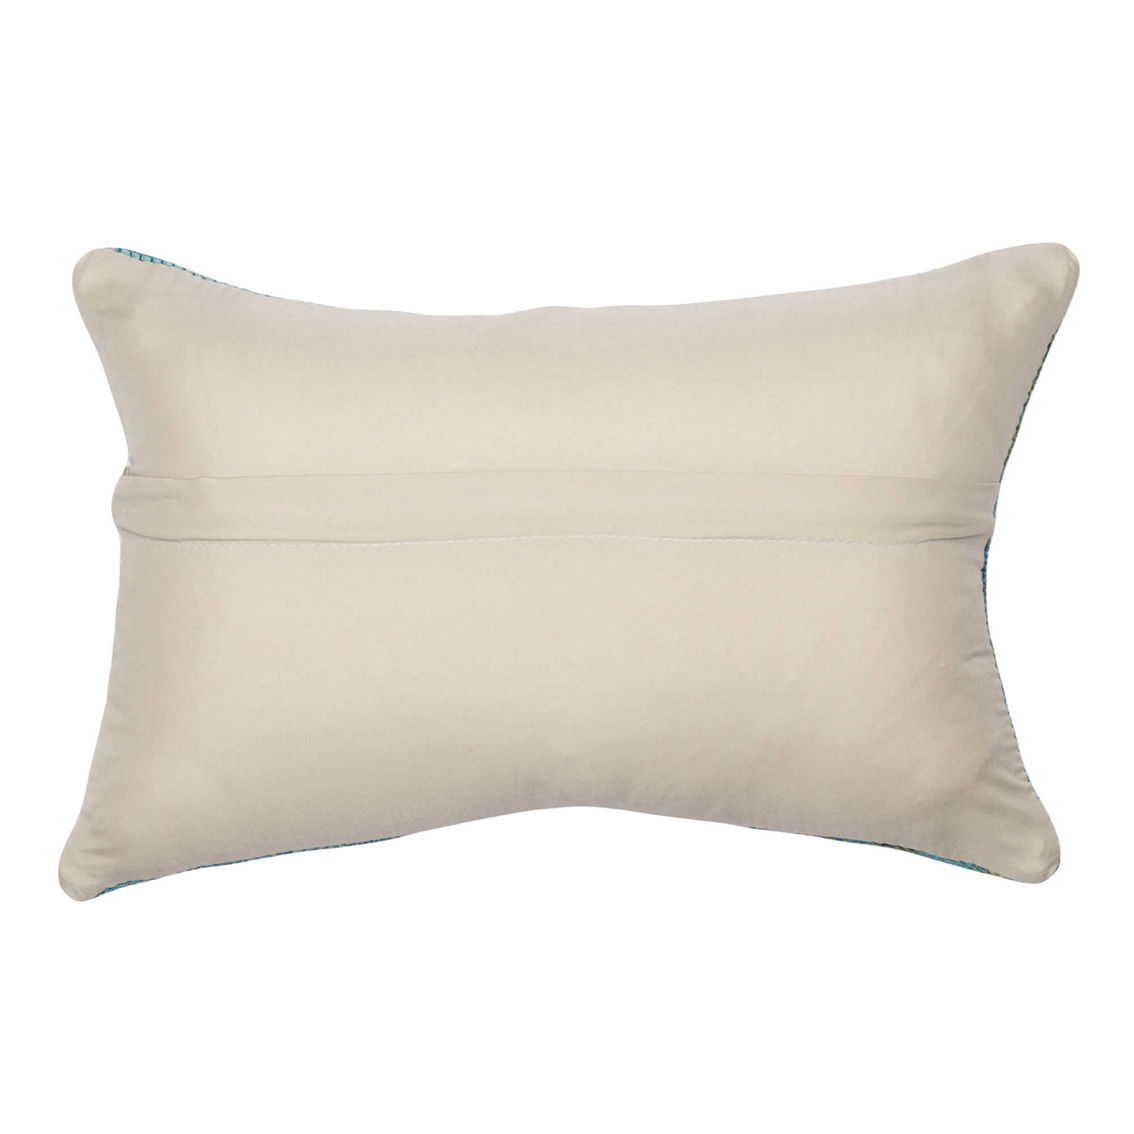 Liora Manne Marina Decorative Indoor Outdoor Lumbar Pillow - Image 2 of 2